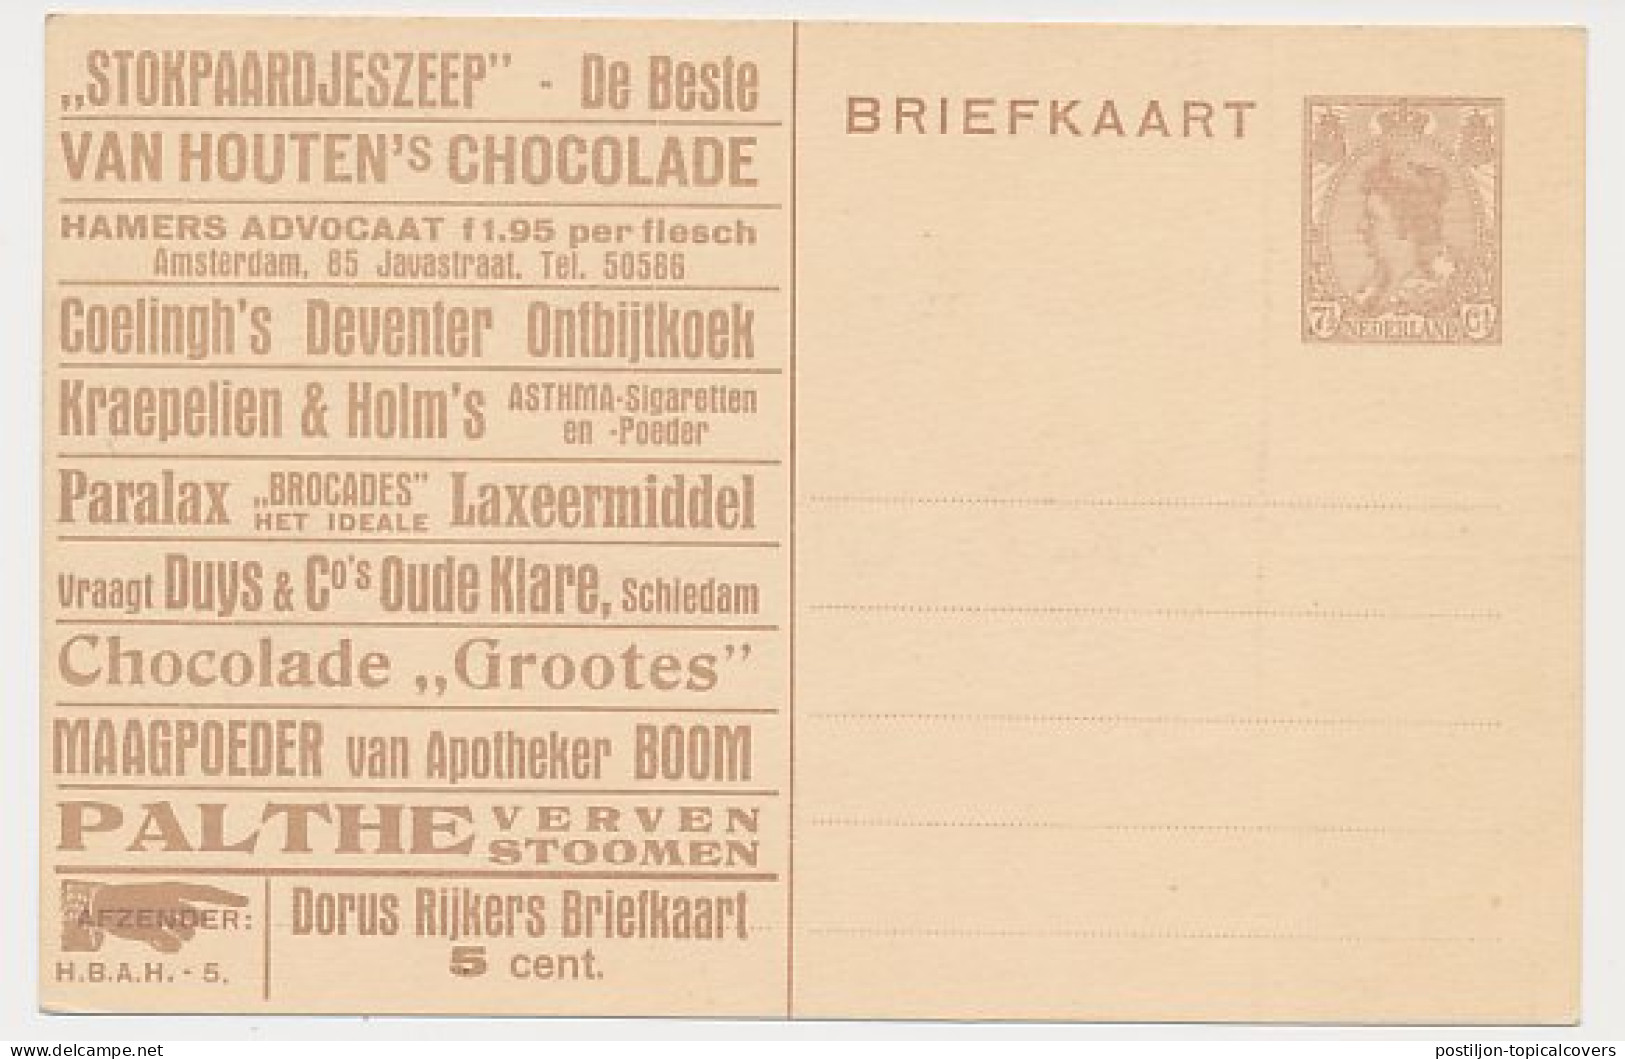 Particuliere Briefkaart Geuzendam DR7 - Ganzsachen